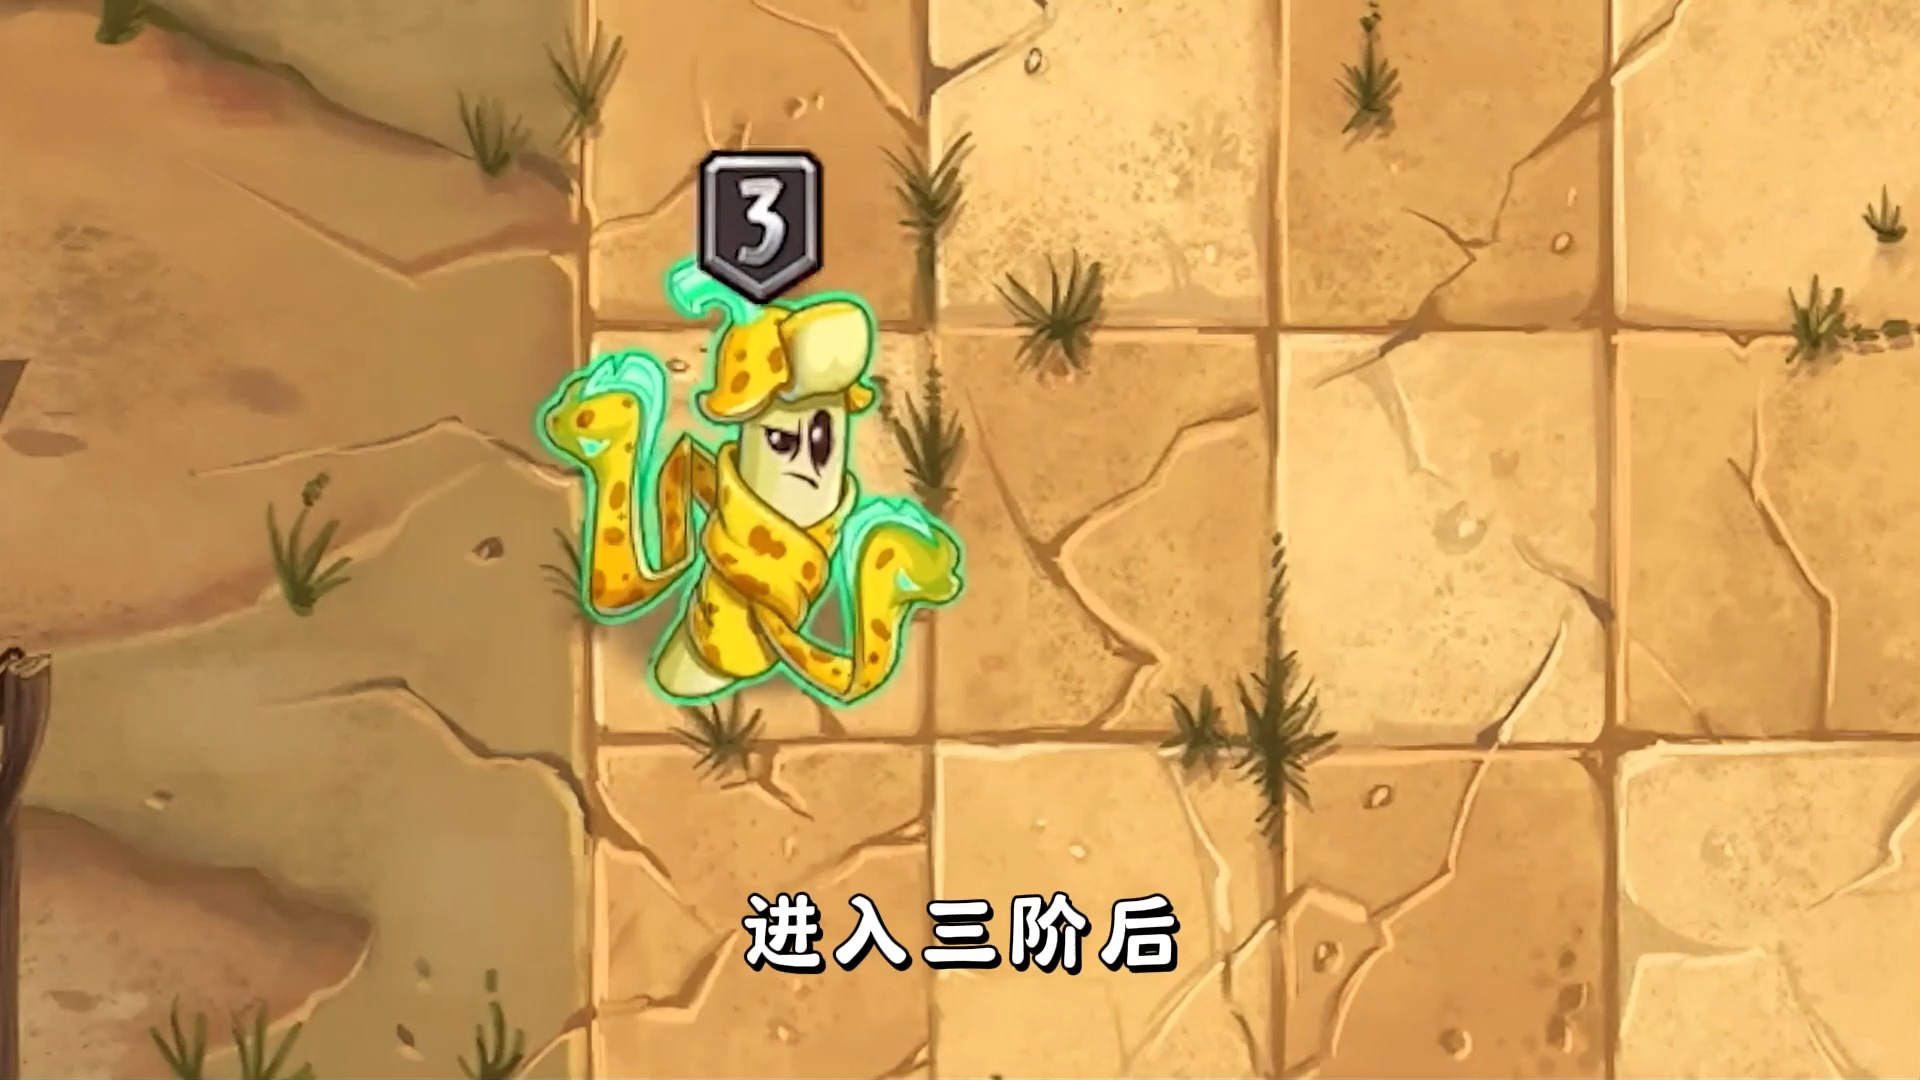 111 植物大战僵尸2:中文版的电鳗香蕉表现如何?